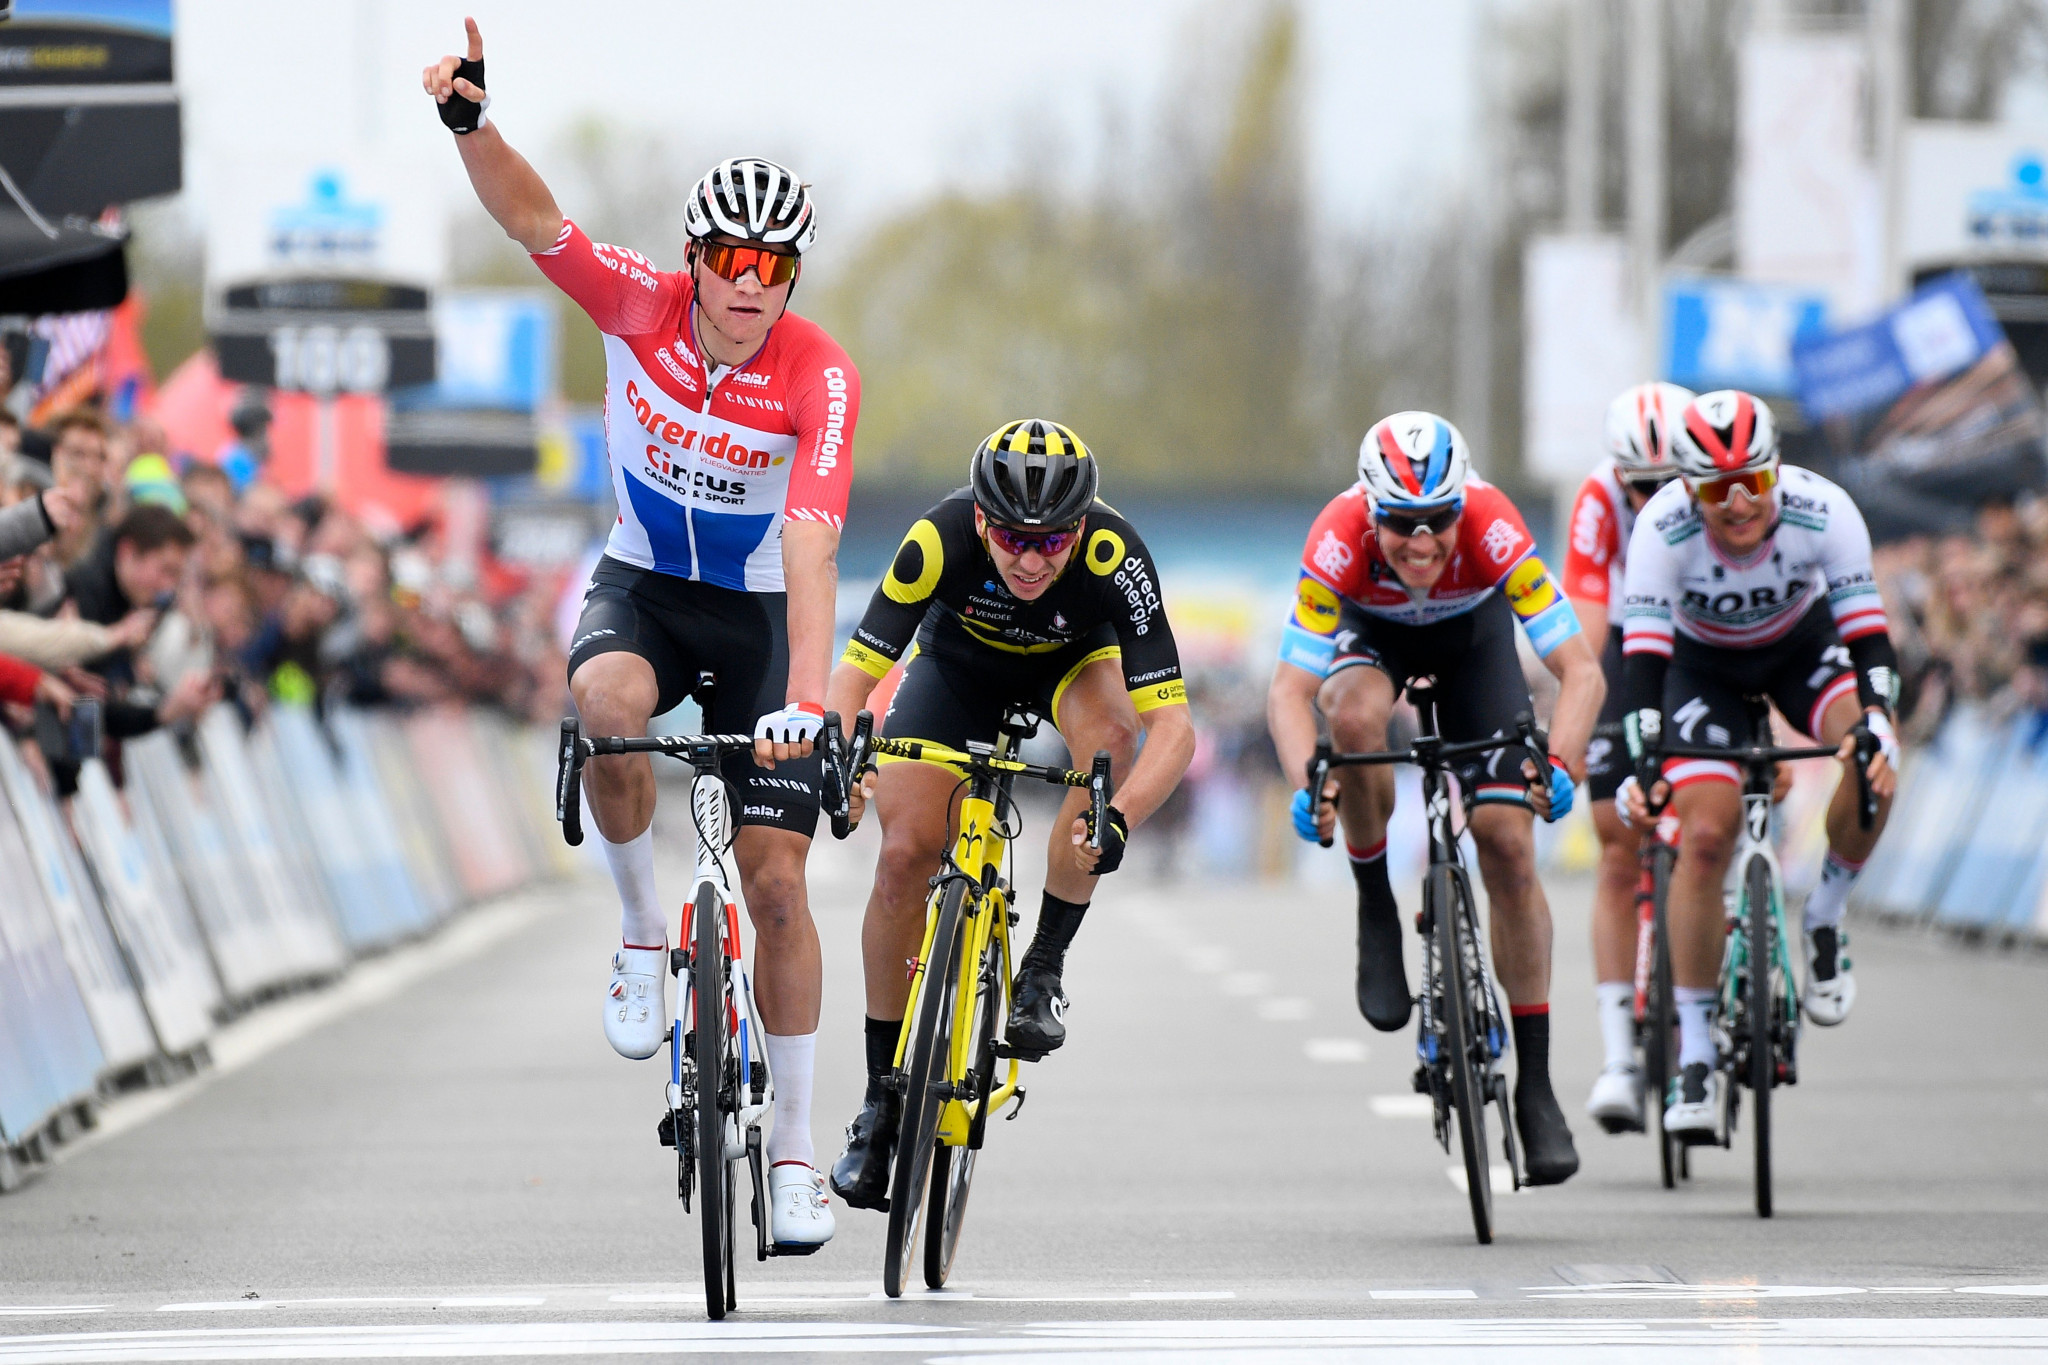 Van der Poel clinches maiden UCI WorldTour triumph at Dwars door Vlaanderen